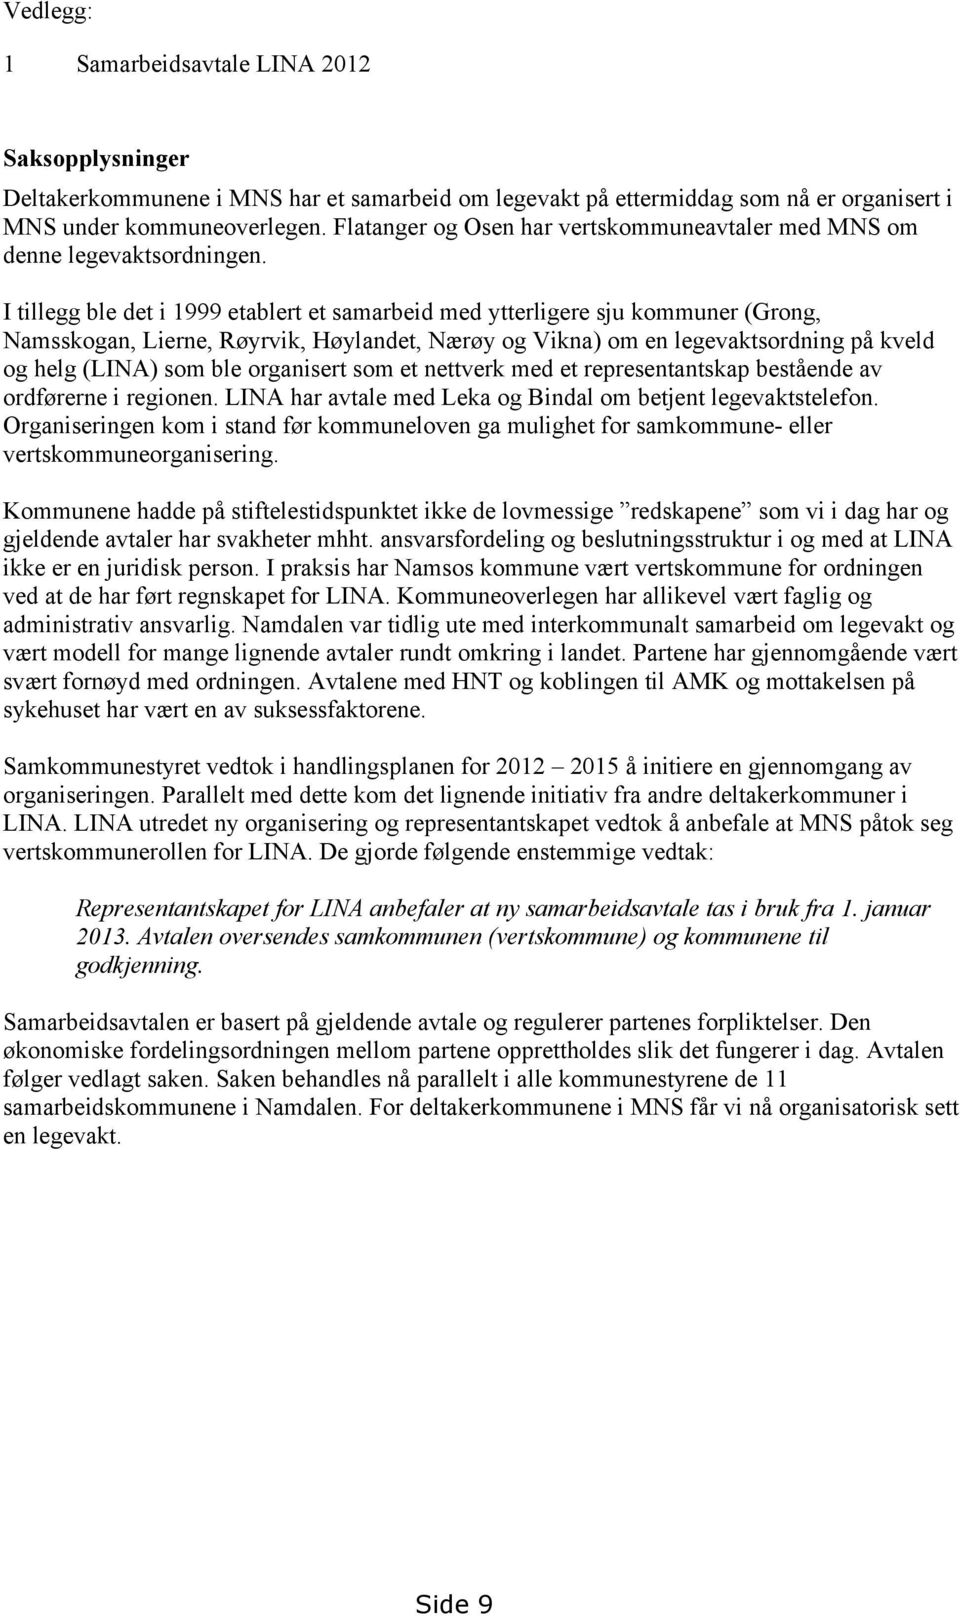 I tillegg ble det i 1999 etablert et samarbeid med ytterligere sju kommuner (Grong, Namsskogan, Lierne, Røyrvik, Høylandet, Nærøy og Vikna) om en legevaktsordning på kveld og helg (LINA) som ble